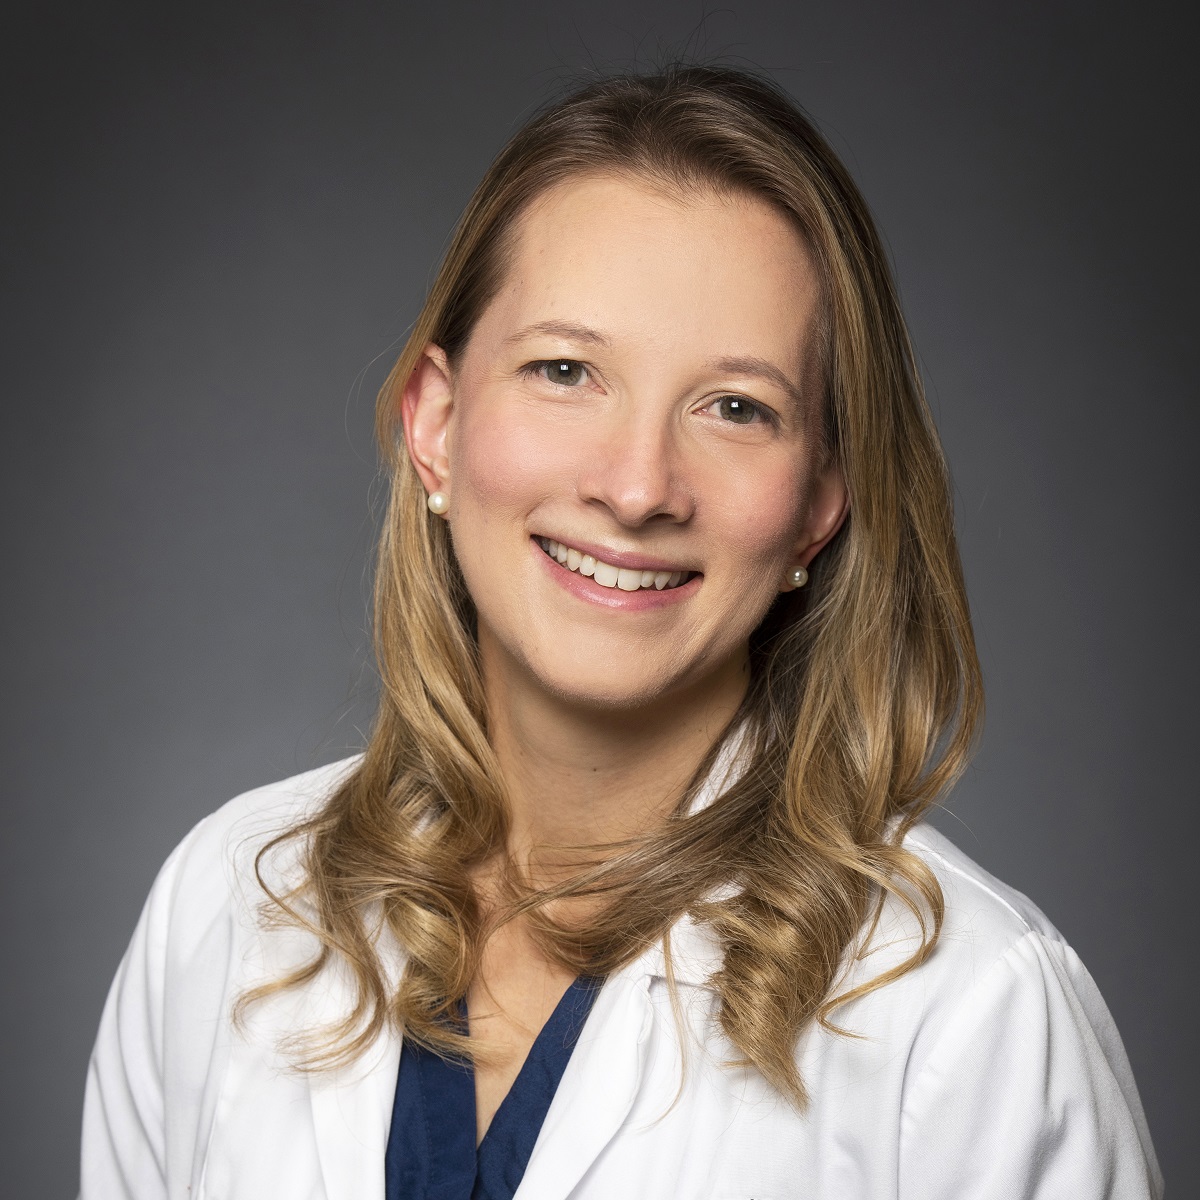 Dr. Chloe Gottlieb